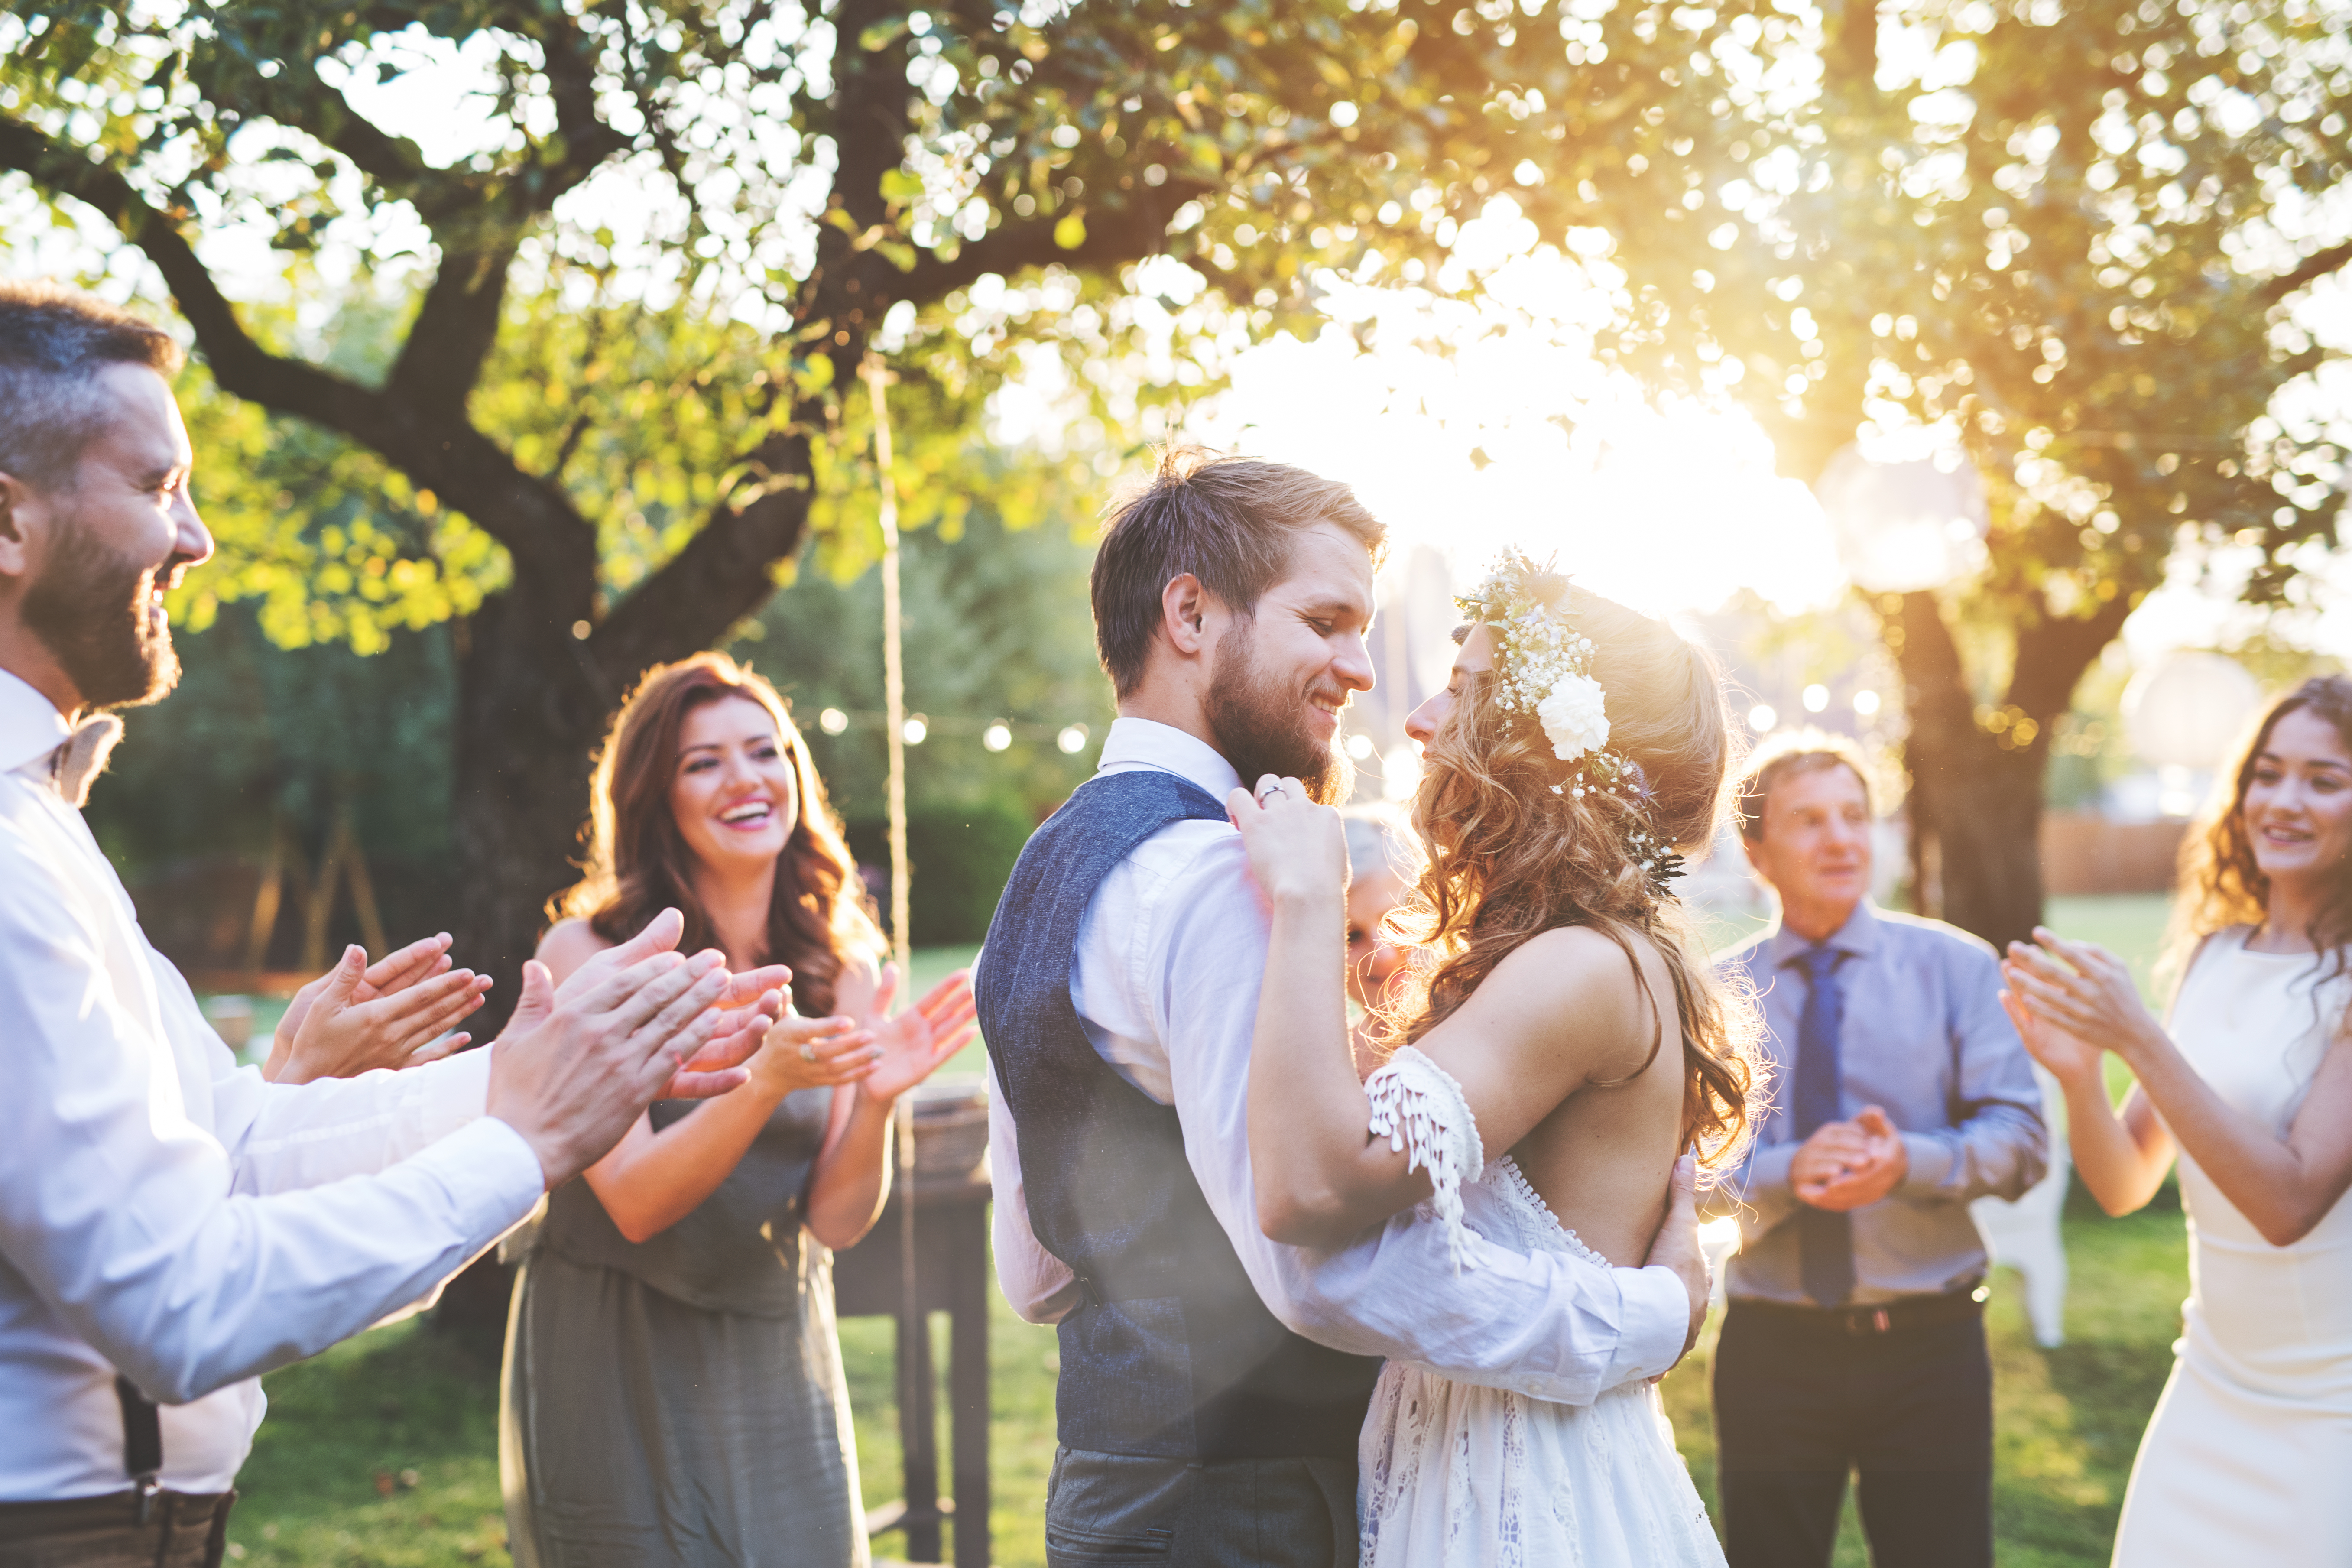 Una joven pareja bailando en su boda | Fuente: Shutterstock